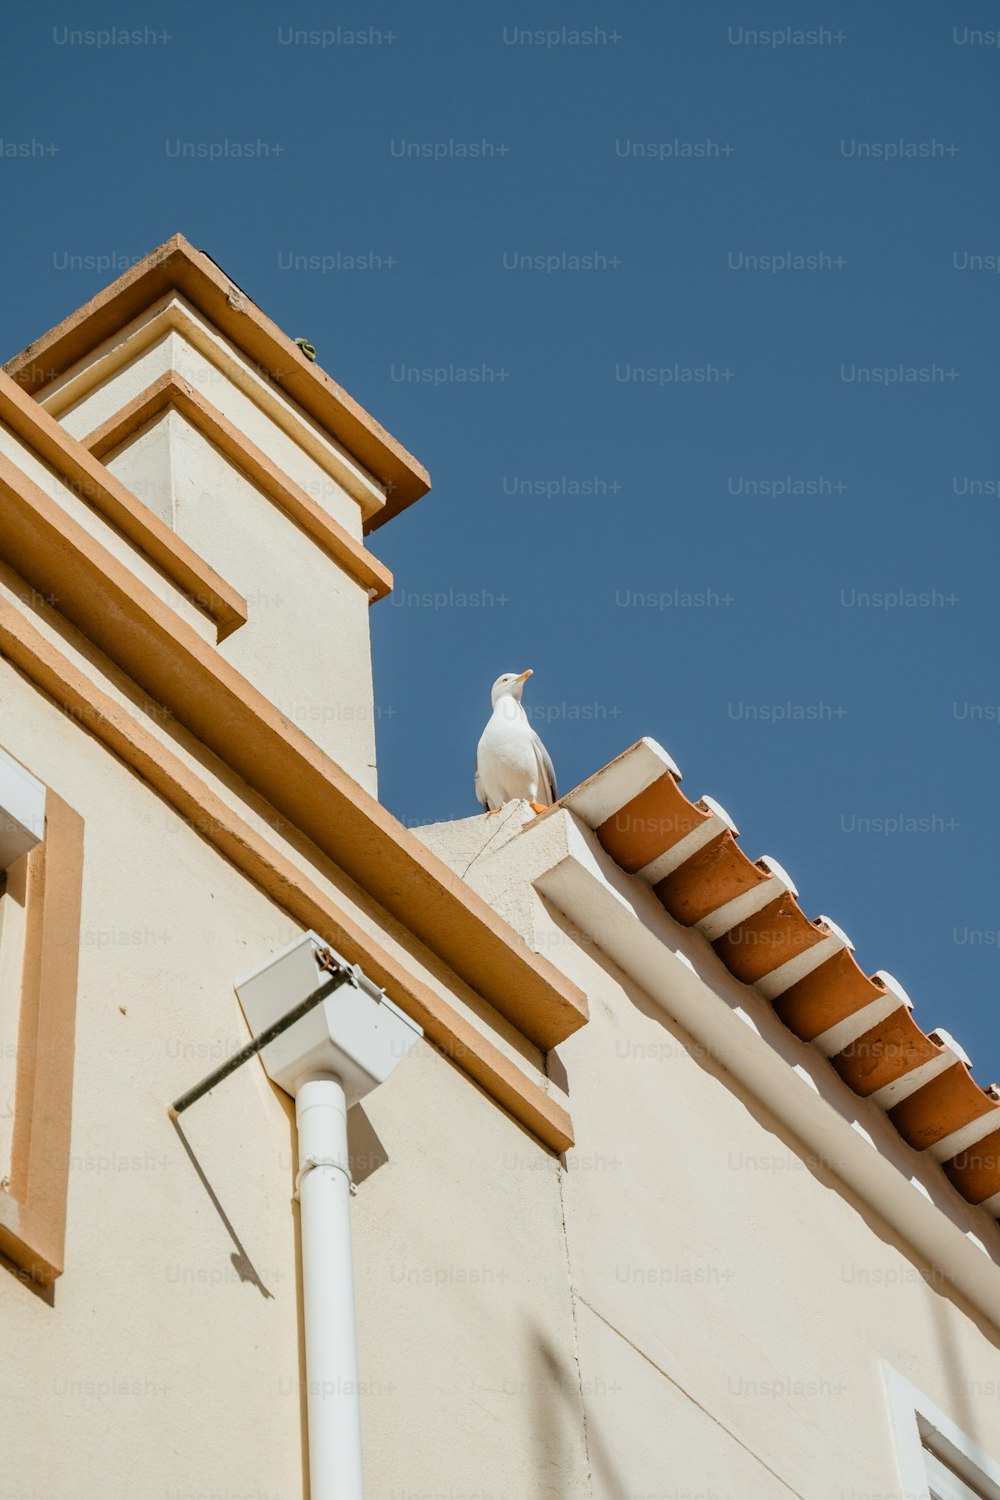 Ein weißer Vogel sitzt auf einem Gebäude